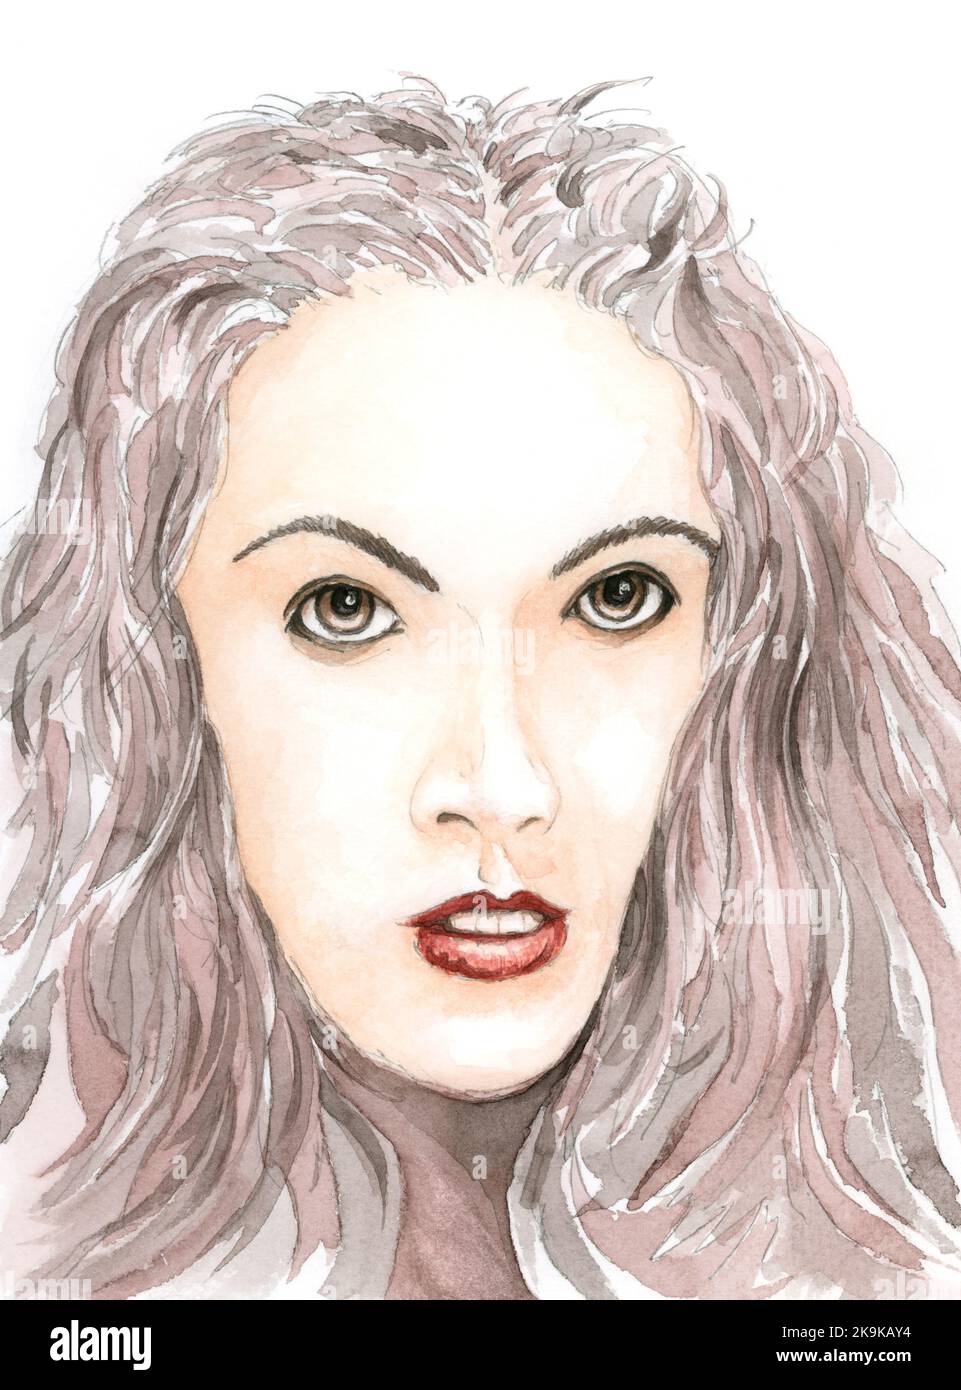 Portrait de femme. Crayon graphite et aquarelle sur papier. Banque D'Images